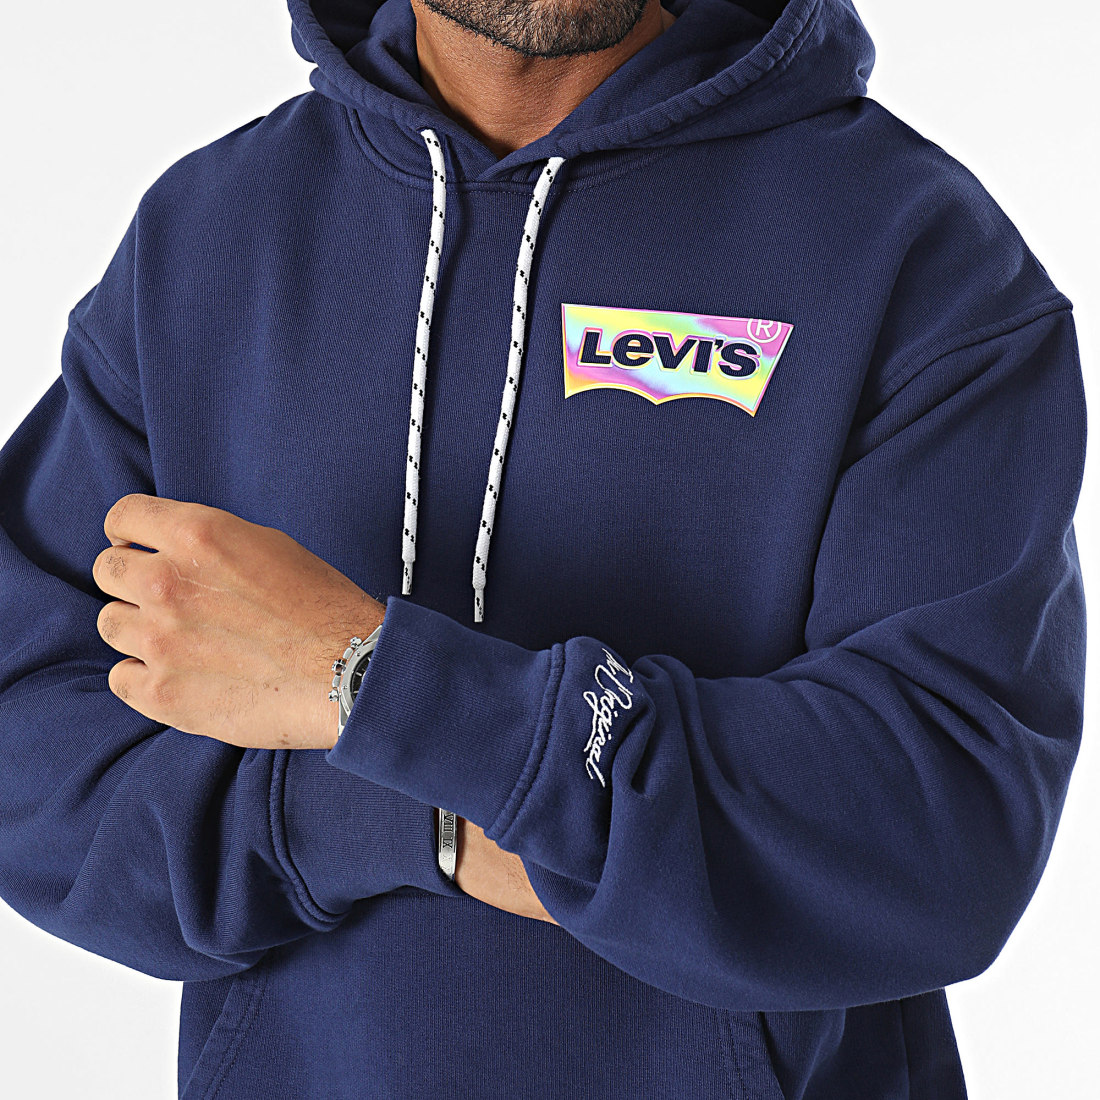 Sweat Levi's® capuche logo bleu foncé coton